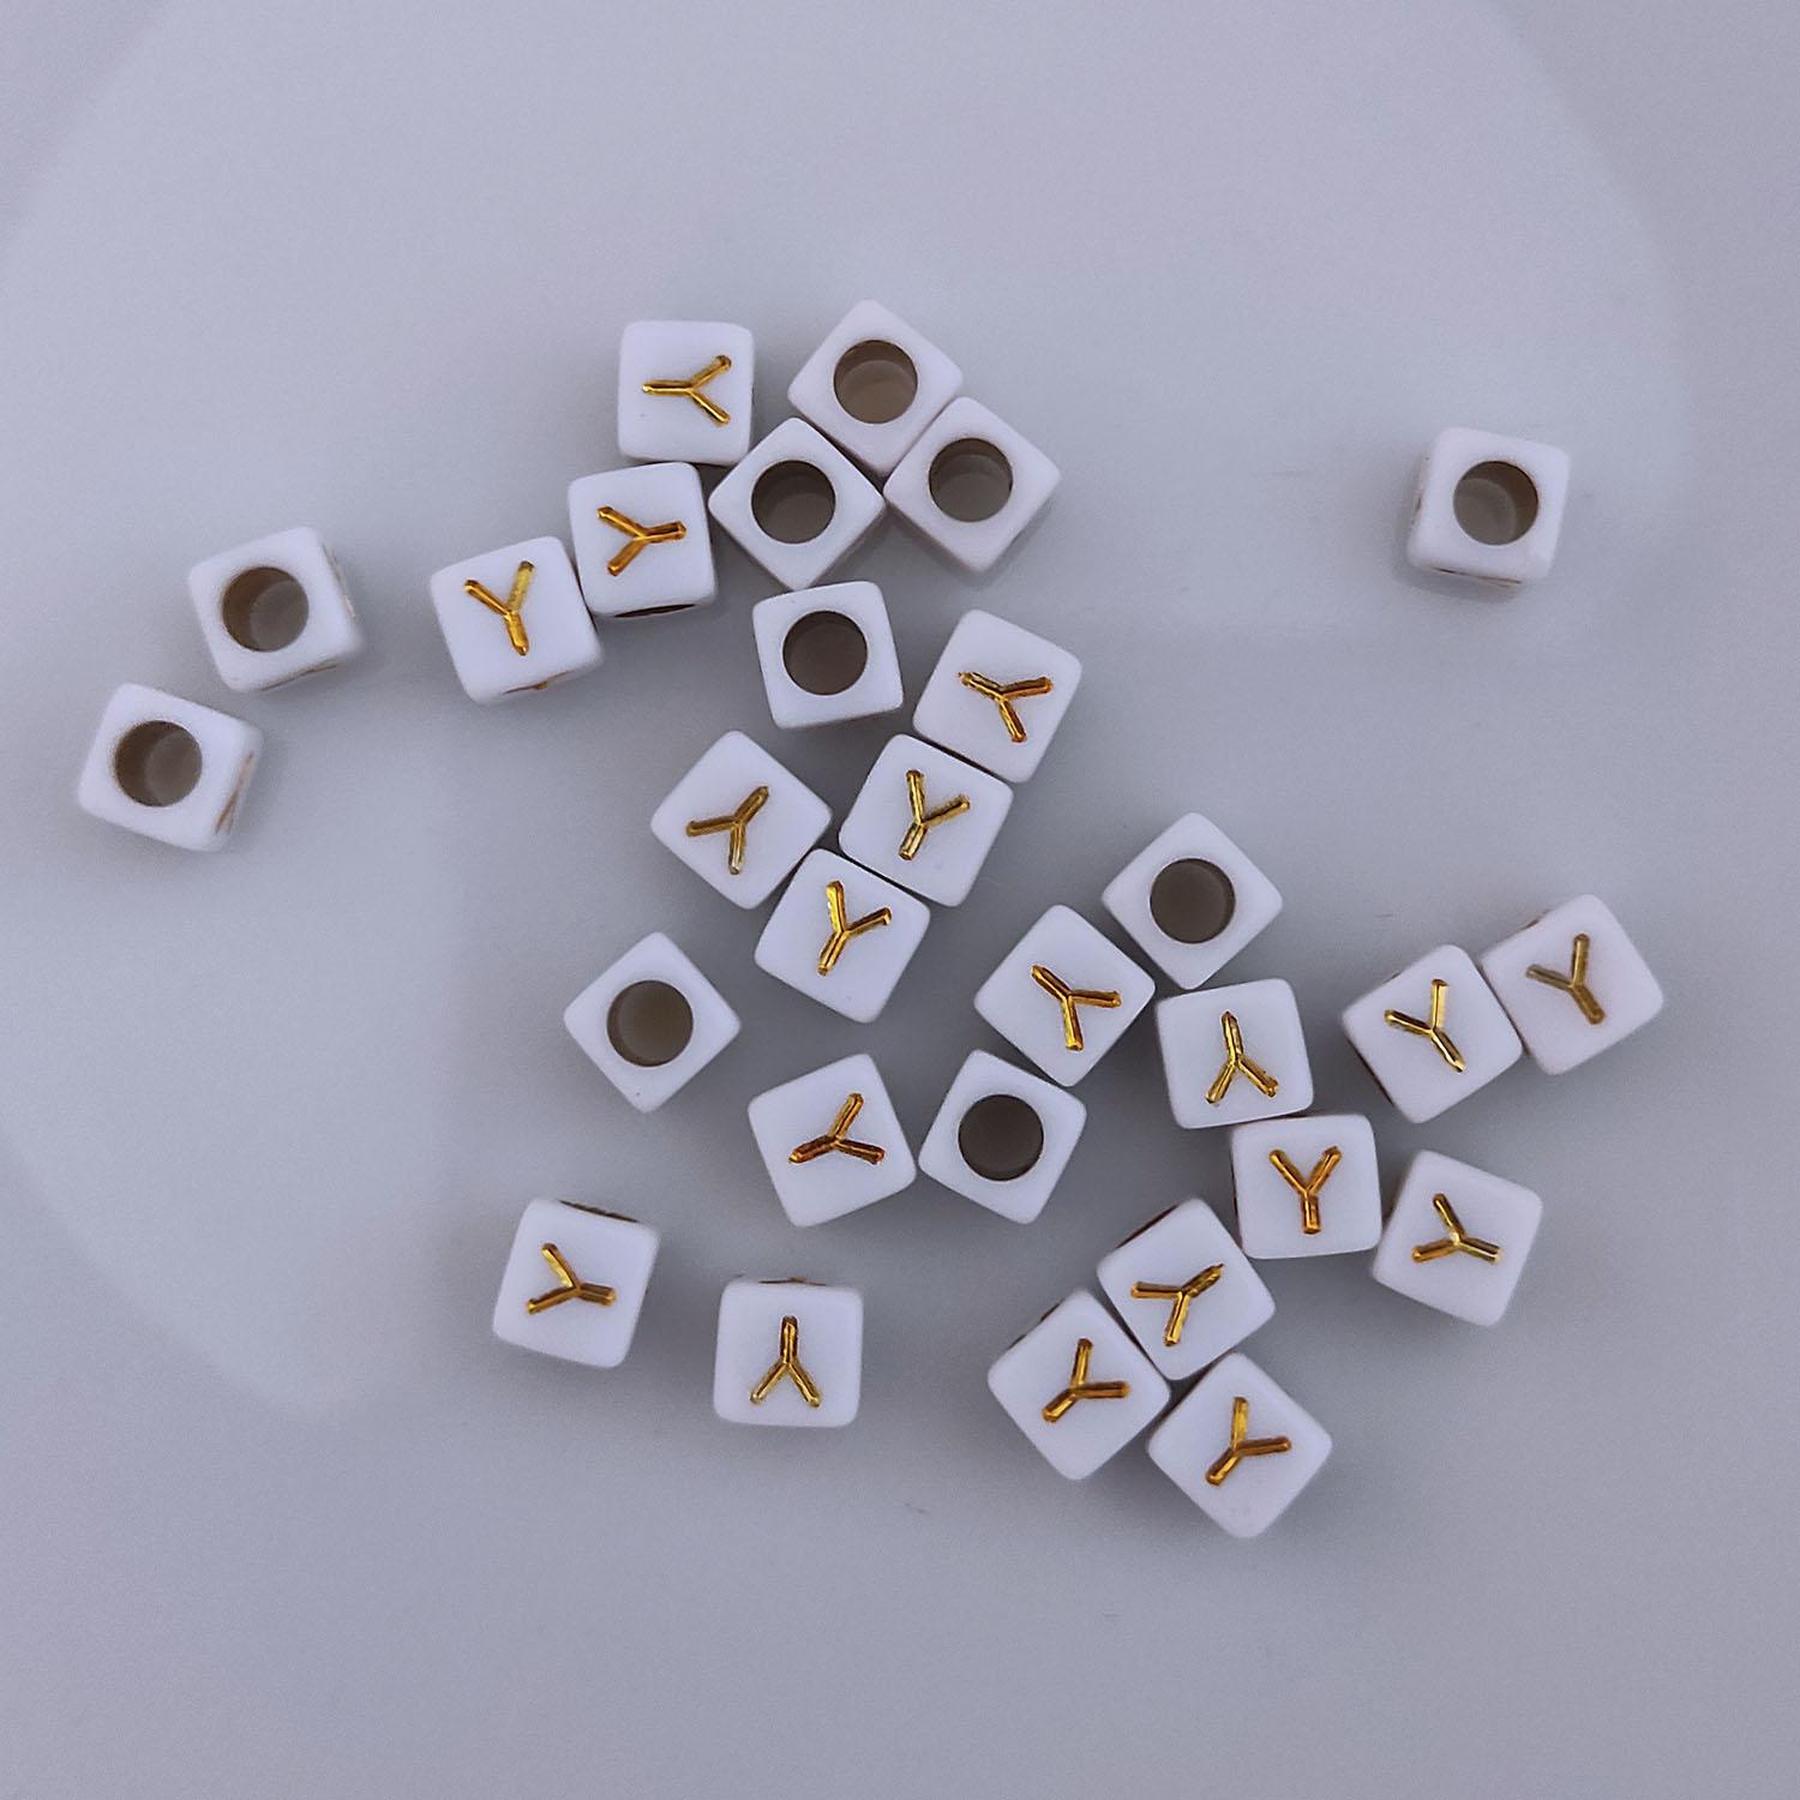 Buchstaben Perlen, 30 Stück, 6x6 mm, weiß mit gold, eckig, Buchstabe Y